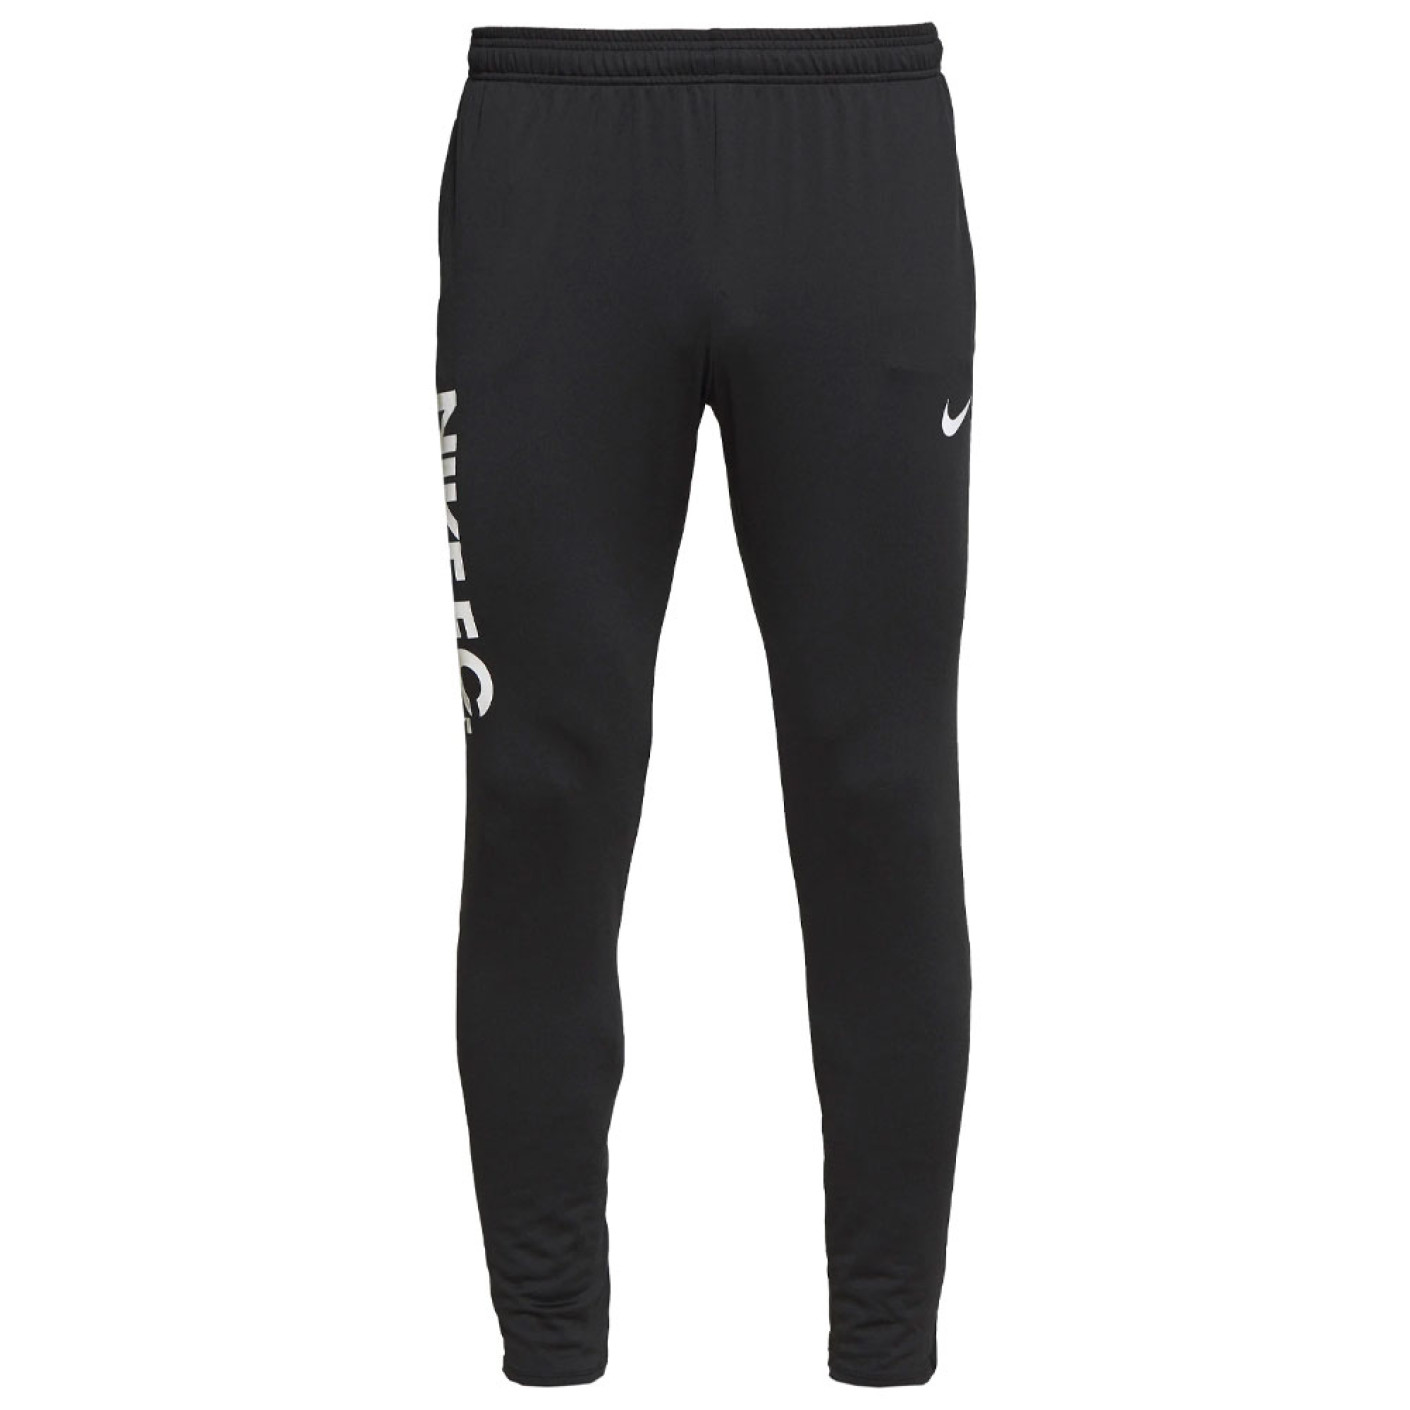 Pantalon d'entraînement Nike F.C. Essential Noir Or